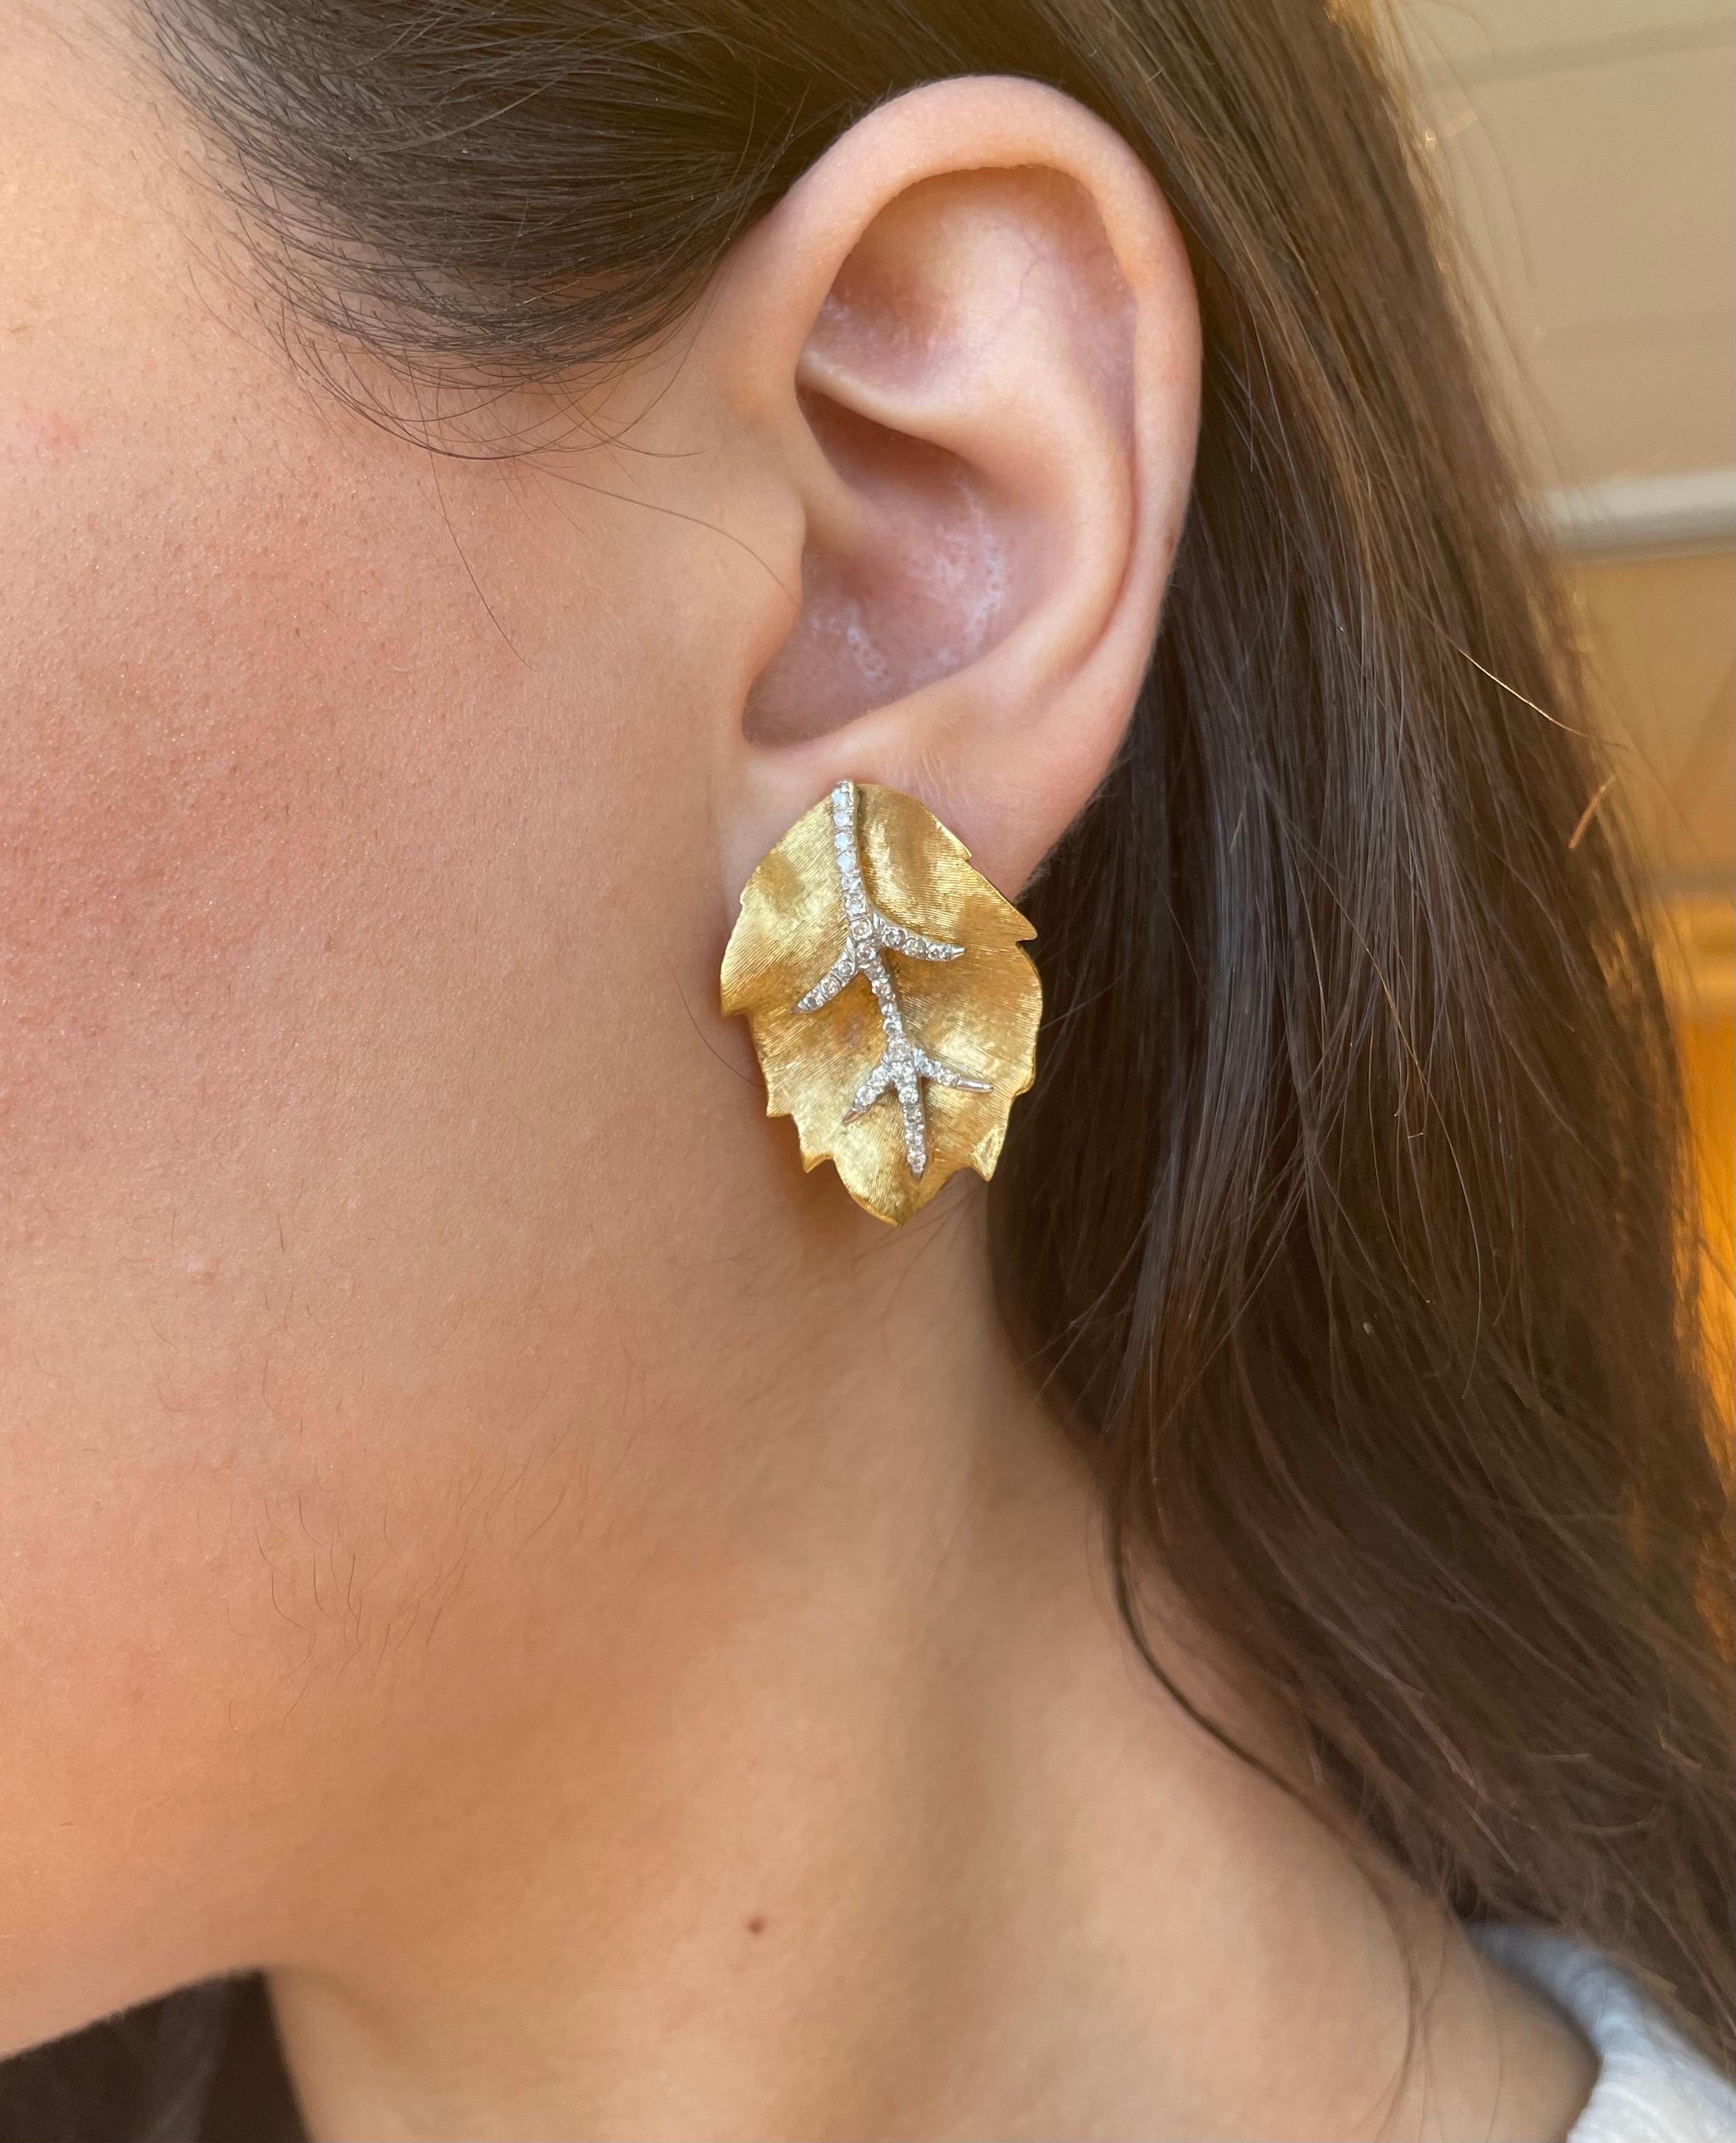 Hübsche Ohrringe mit Blattmotiv aus Diamant und zweifarbigem Gold, handgefertigt.
56 runde Brillanten von insgesamt ca. 0,70 Karat, Farbe H/I und Reinheit SI. 18 Karat Gelb- und Weißgold.
Auf Anfrage wird eine aktuelle digitale Bewertung durch ein